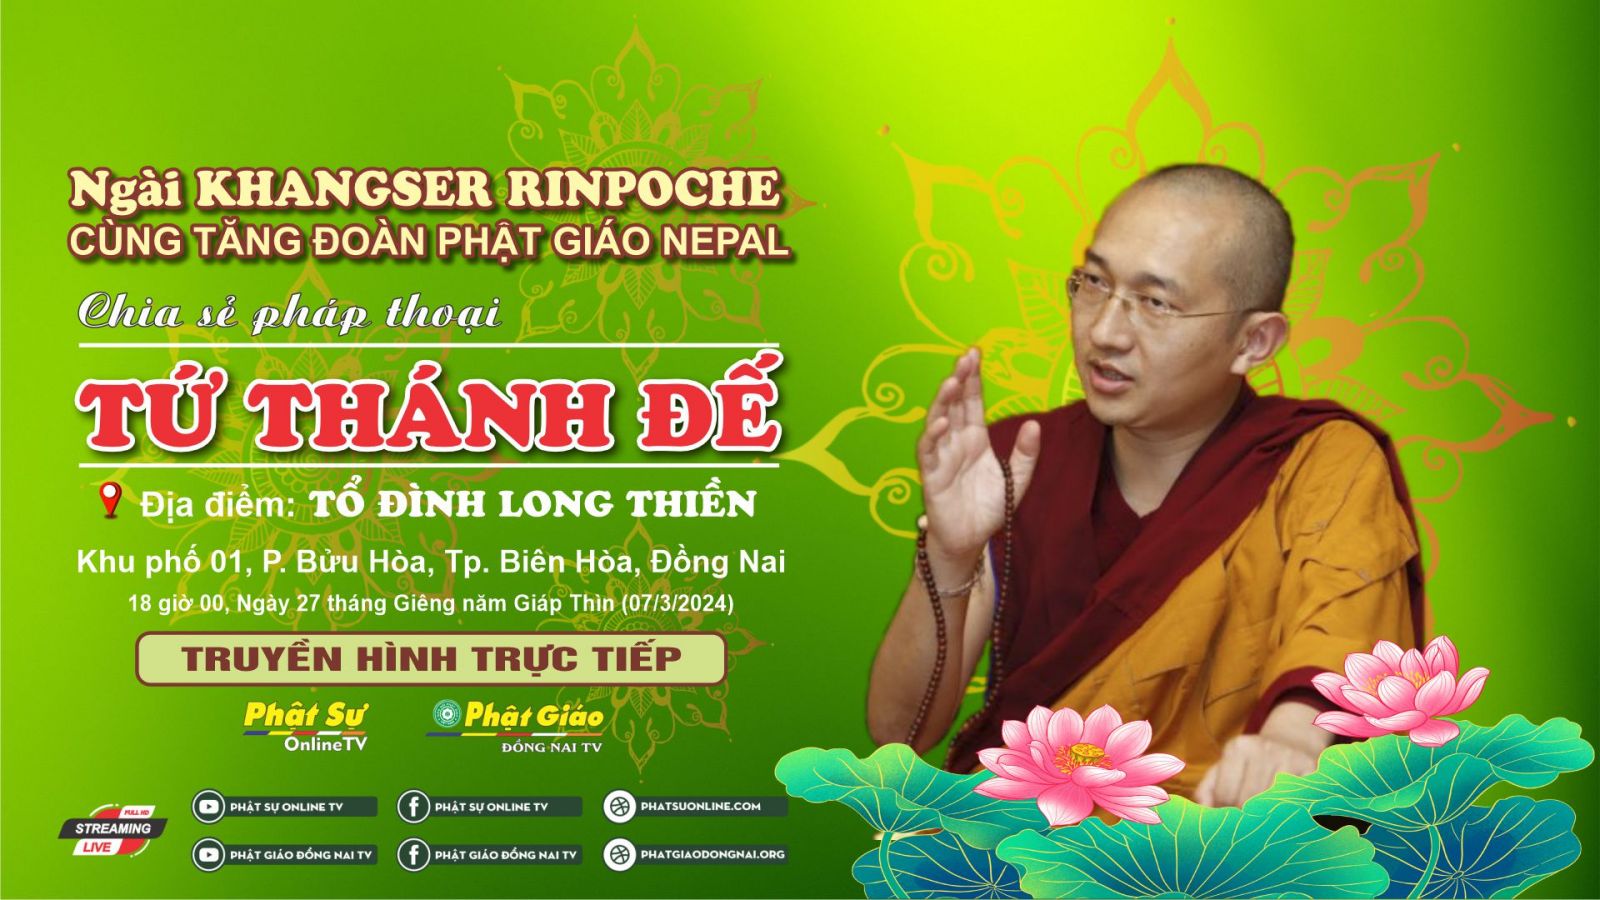 Trực tiếp: Pháp thoại Tứ Thánh Đế do Ngài Khangser Rinpoche thuyết giảng tại Tổ đình Long Thiền